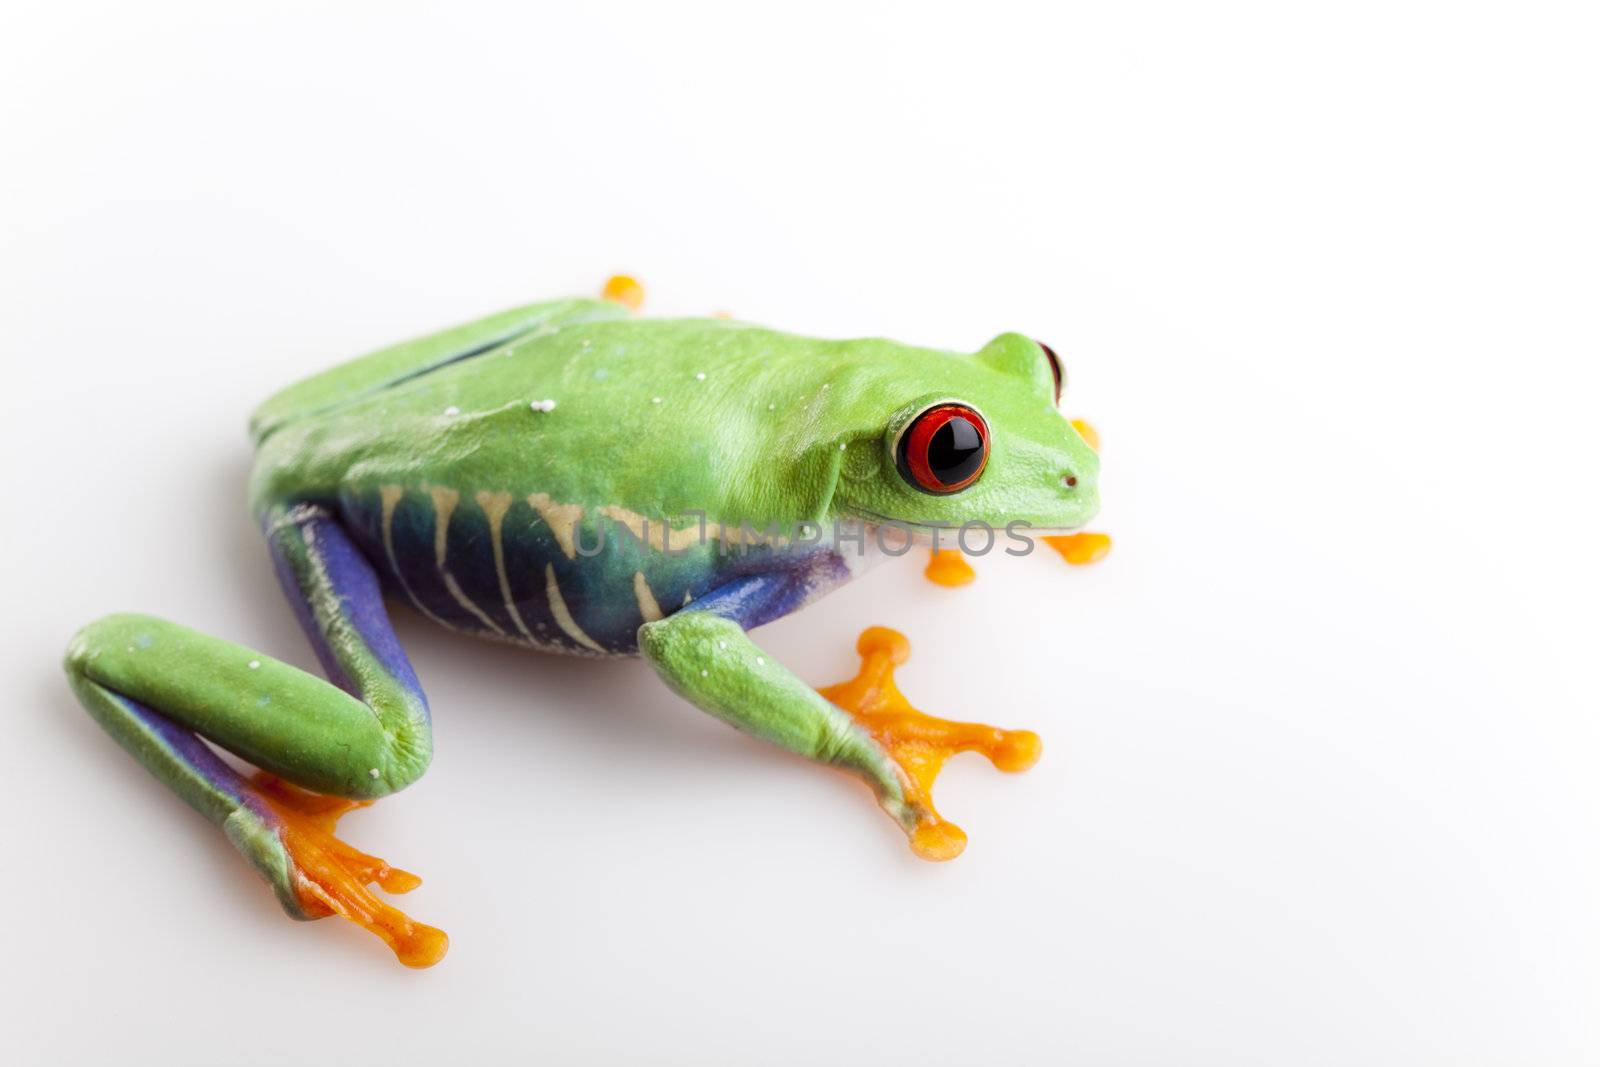 Red eye frog by JanPietruszka